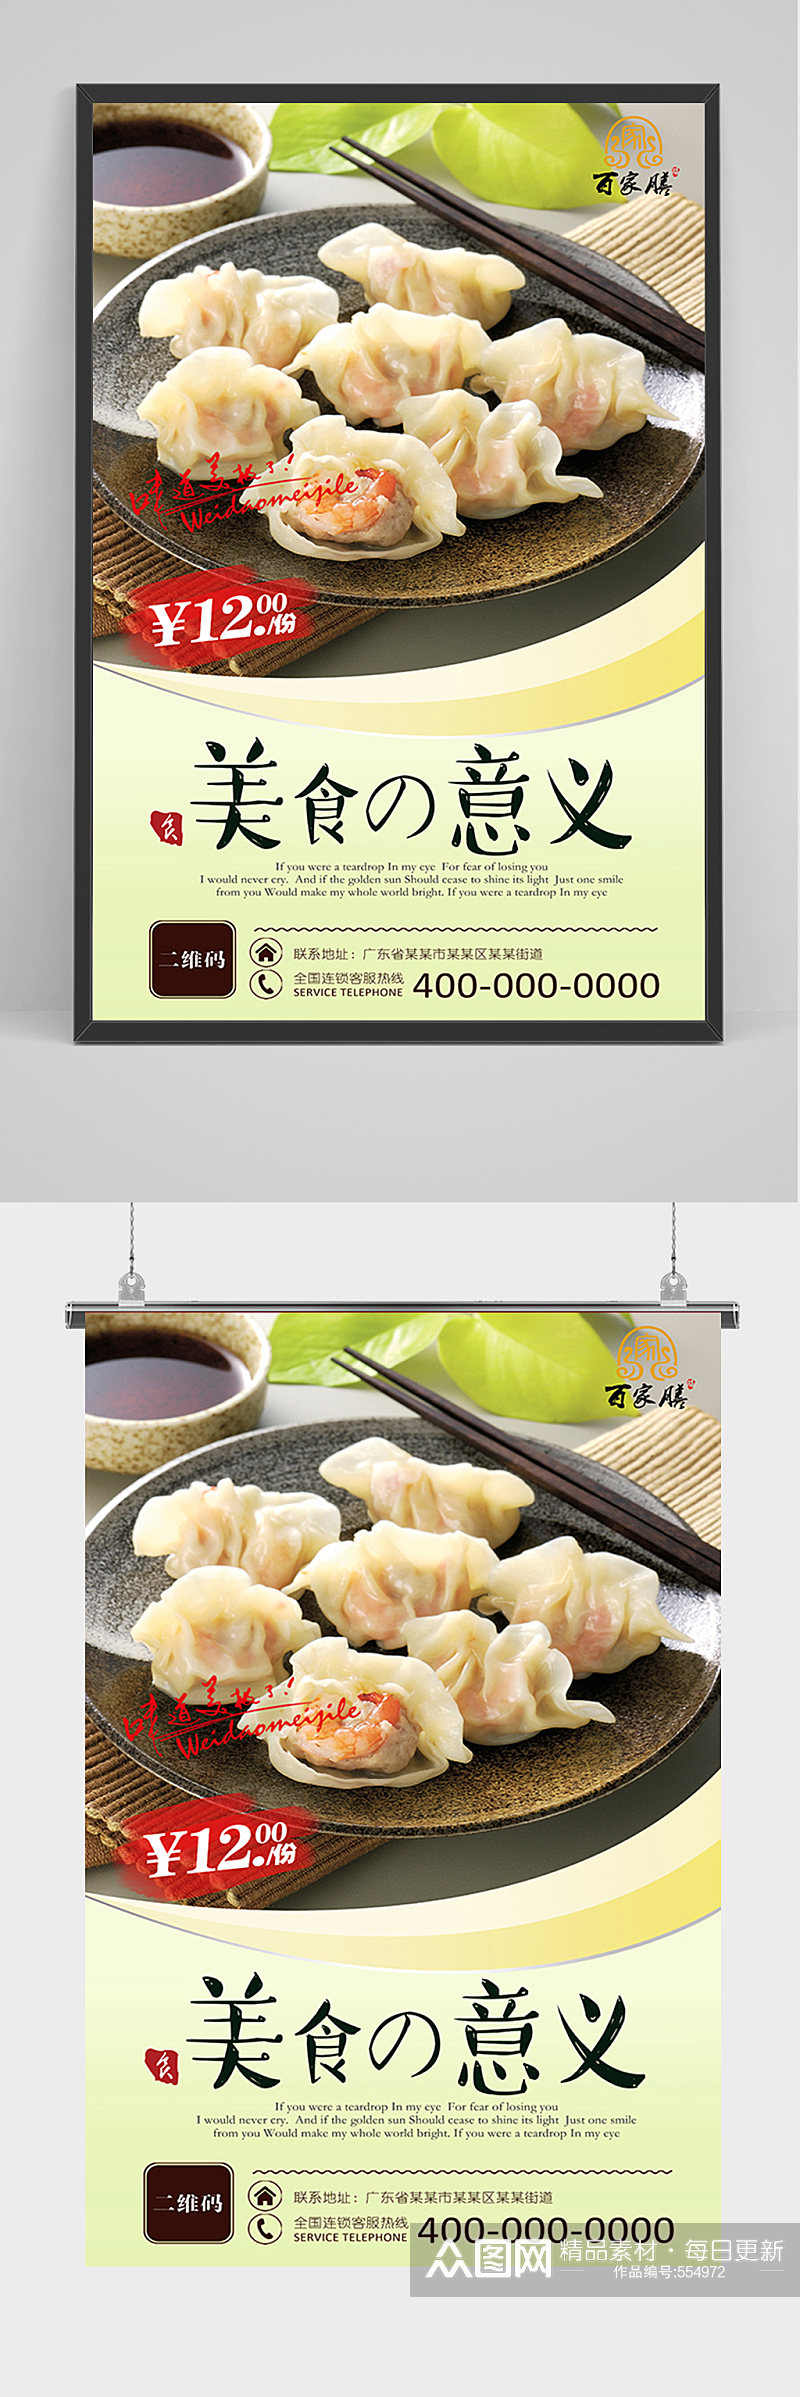 美食水饺促销海报素材